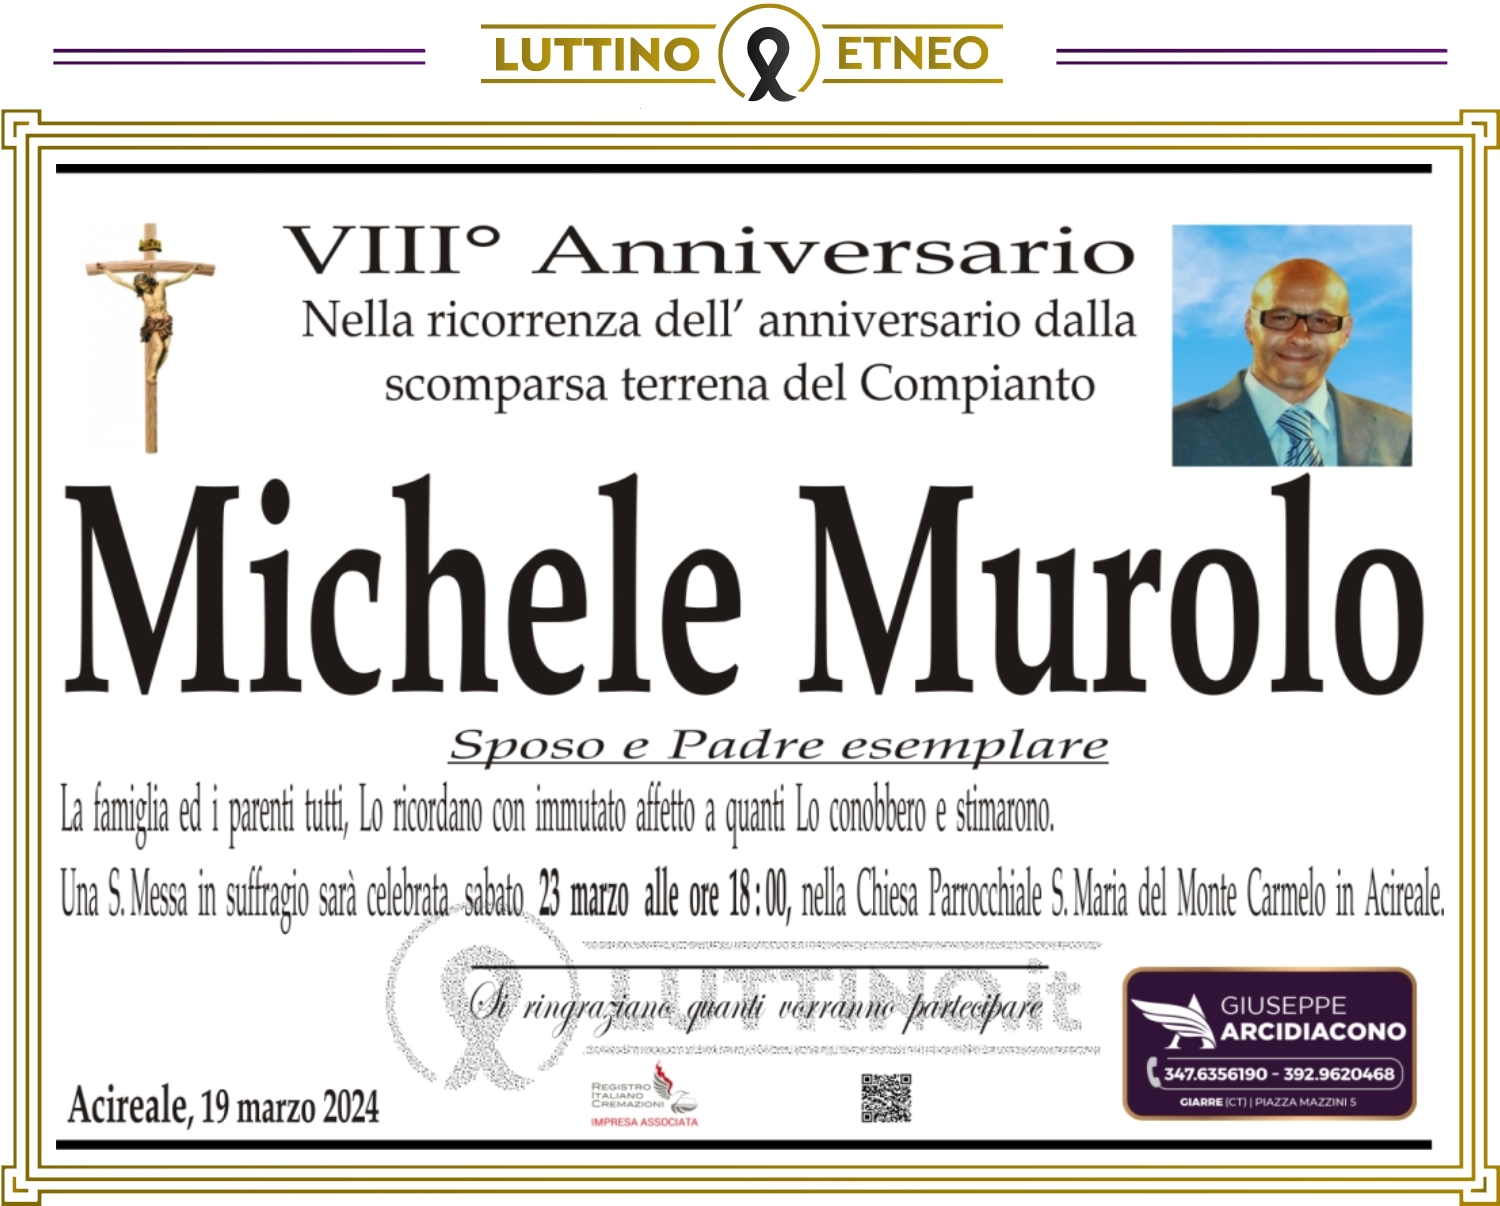 Michele Murolo